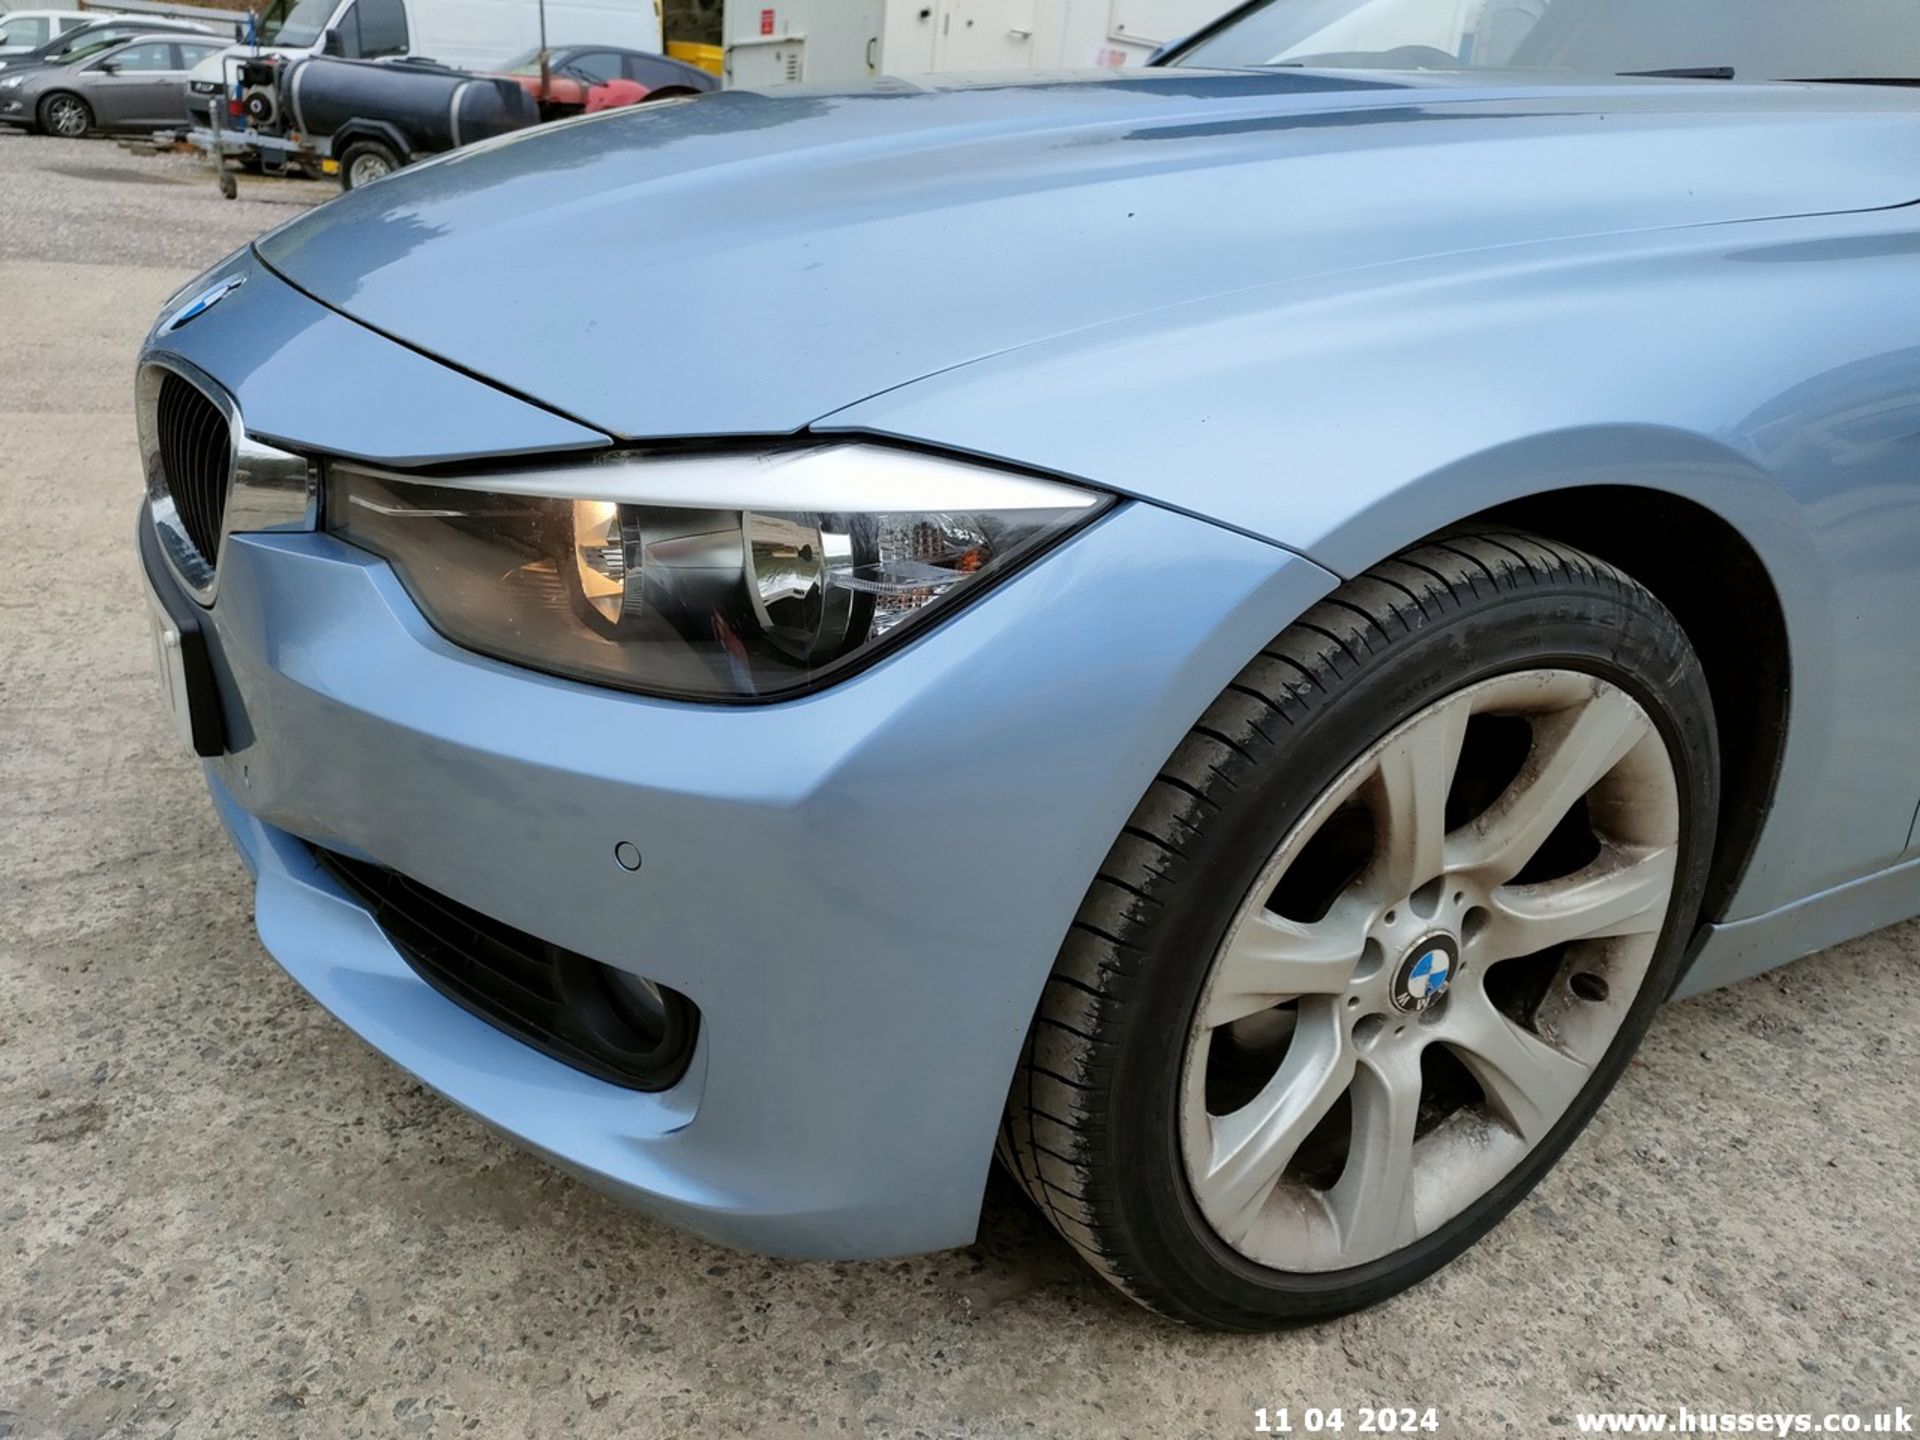 12/62 BMW 320D SE TOURING - 1995cc 5dr Estate (Blue, 174k) - Image 16 of 70